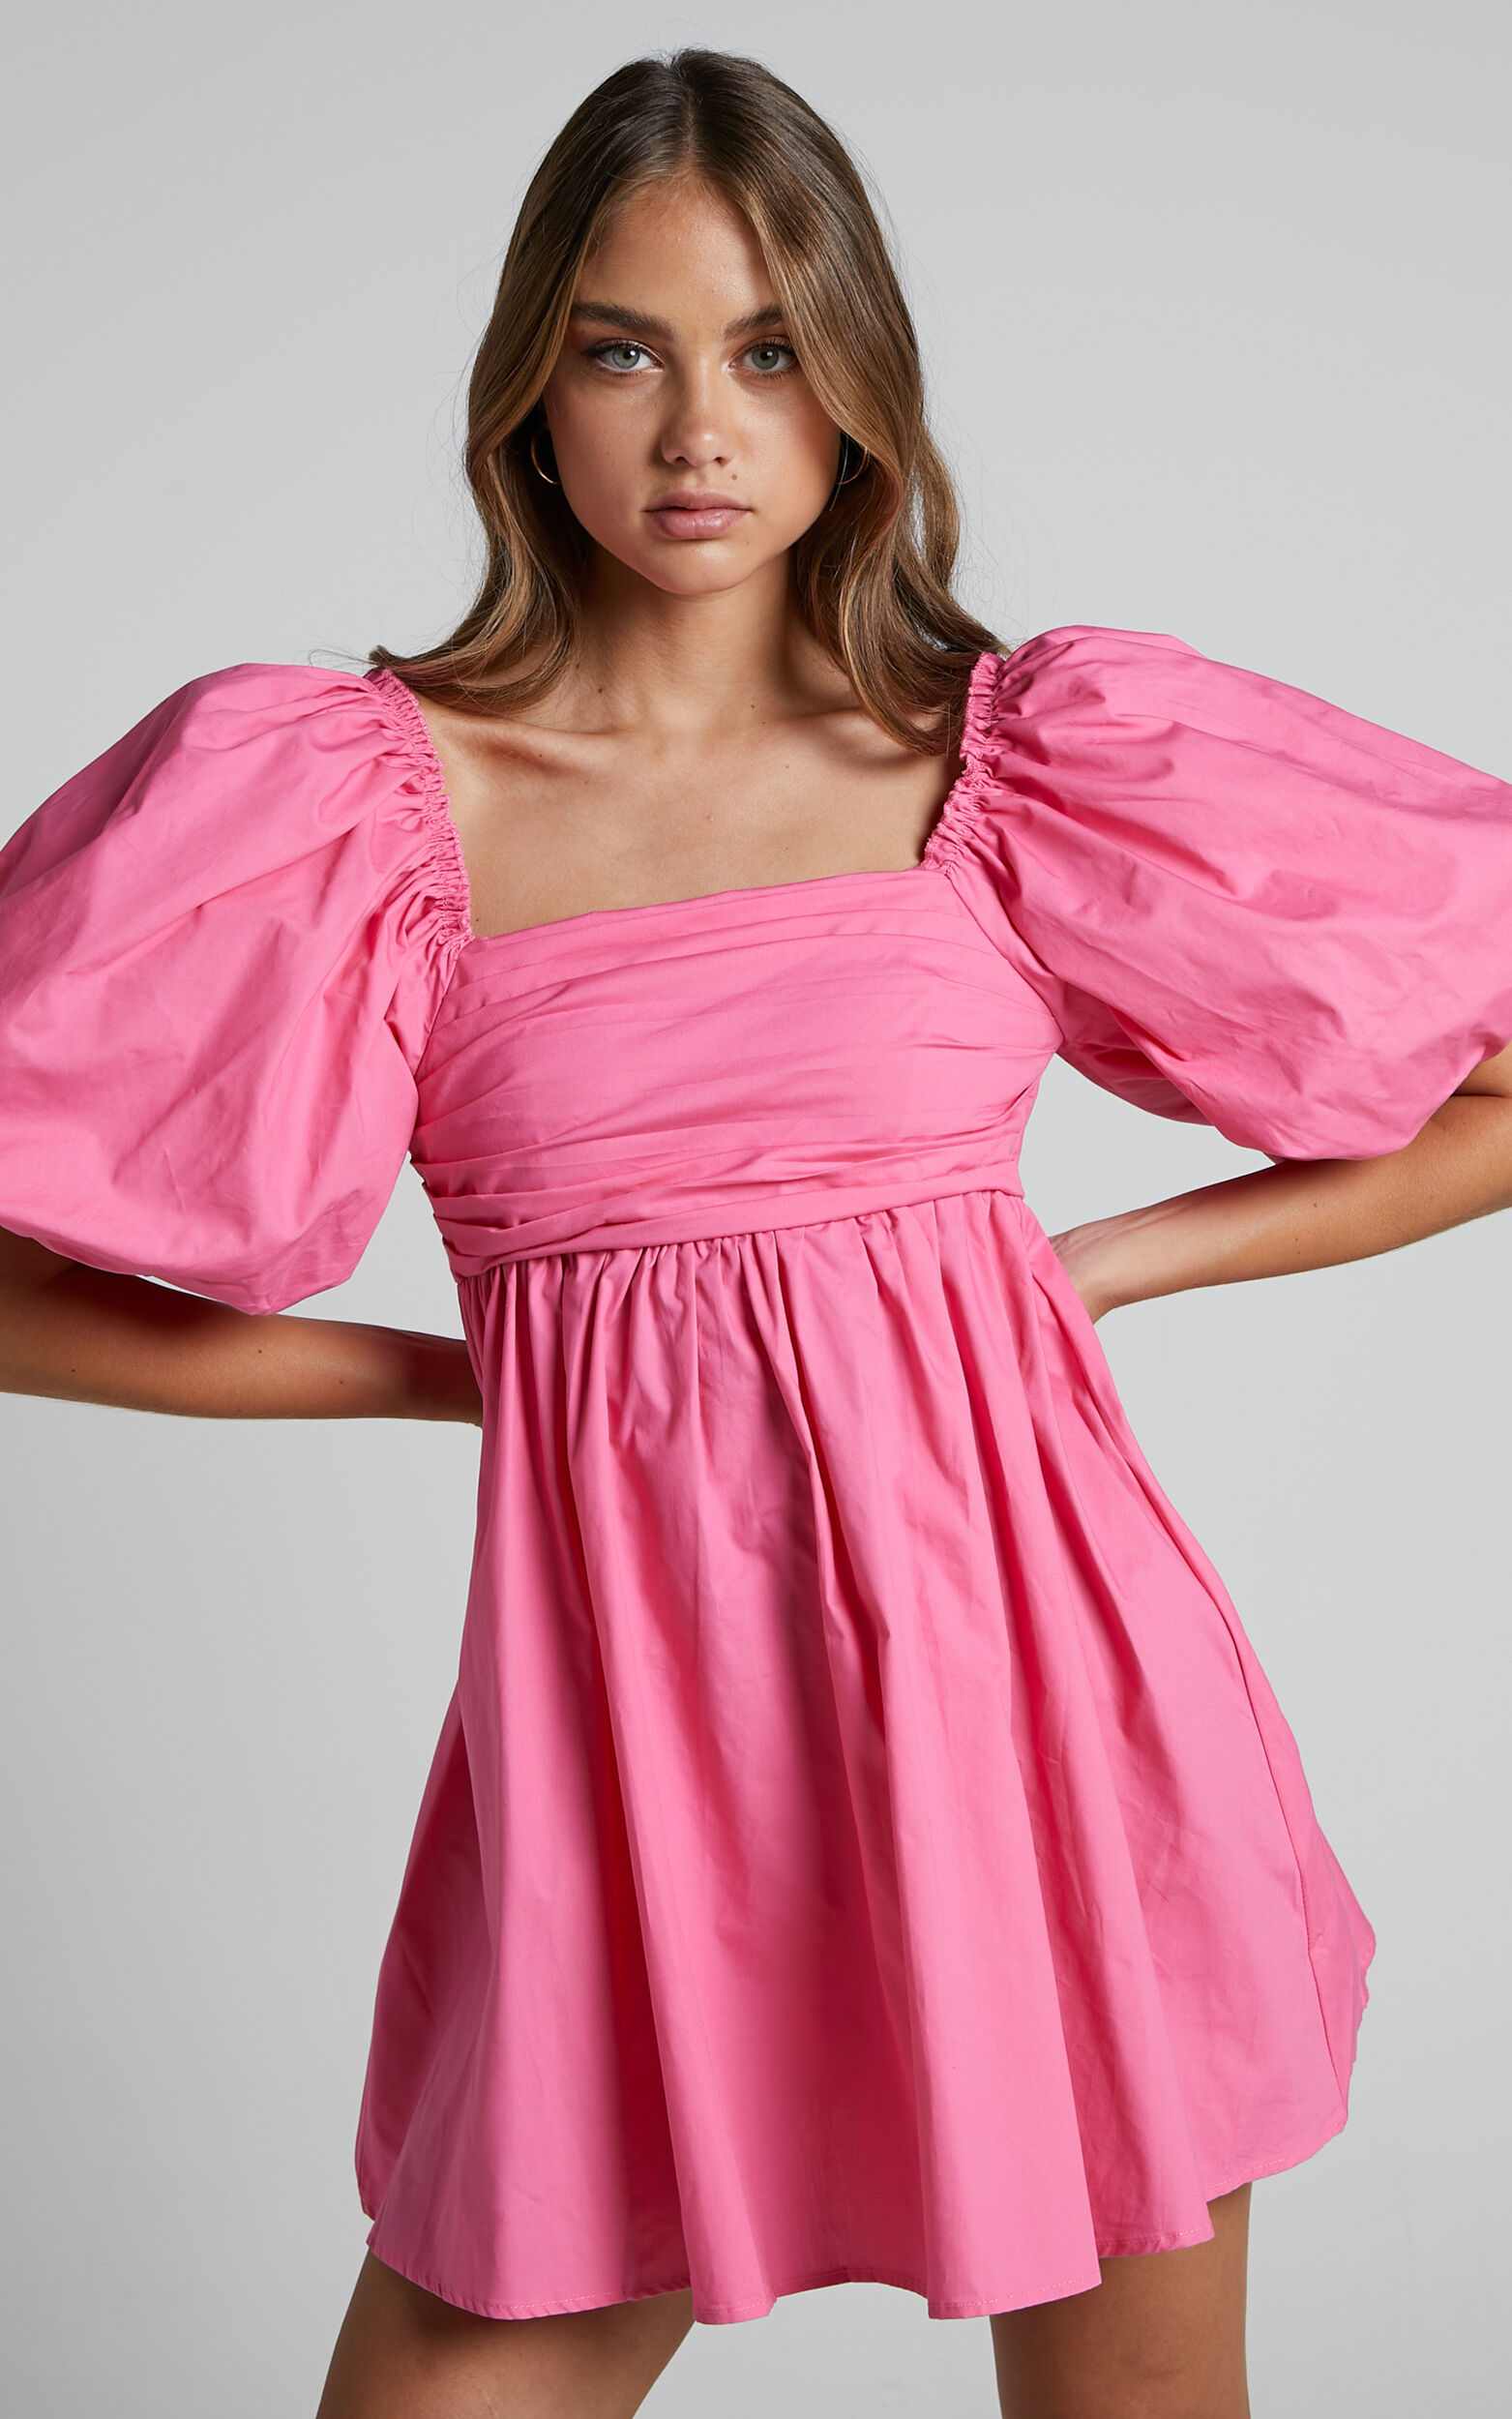 Melony Mini Dress - Cotton Poplin Puff Sleeve Dress in Pink - 06, PNK1